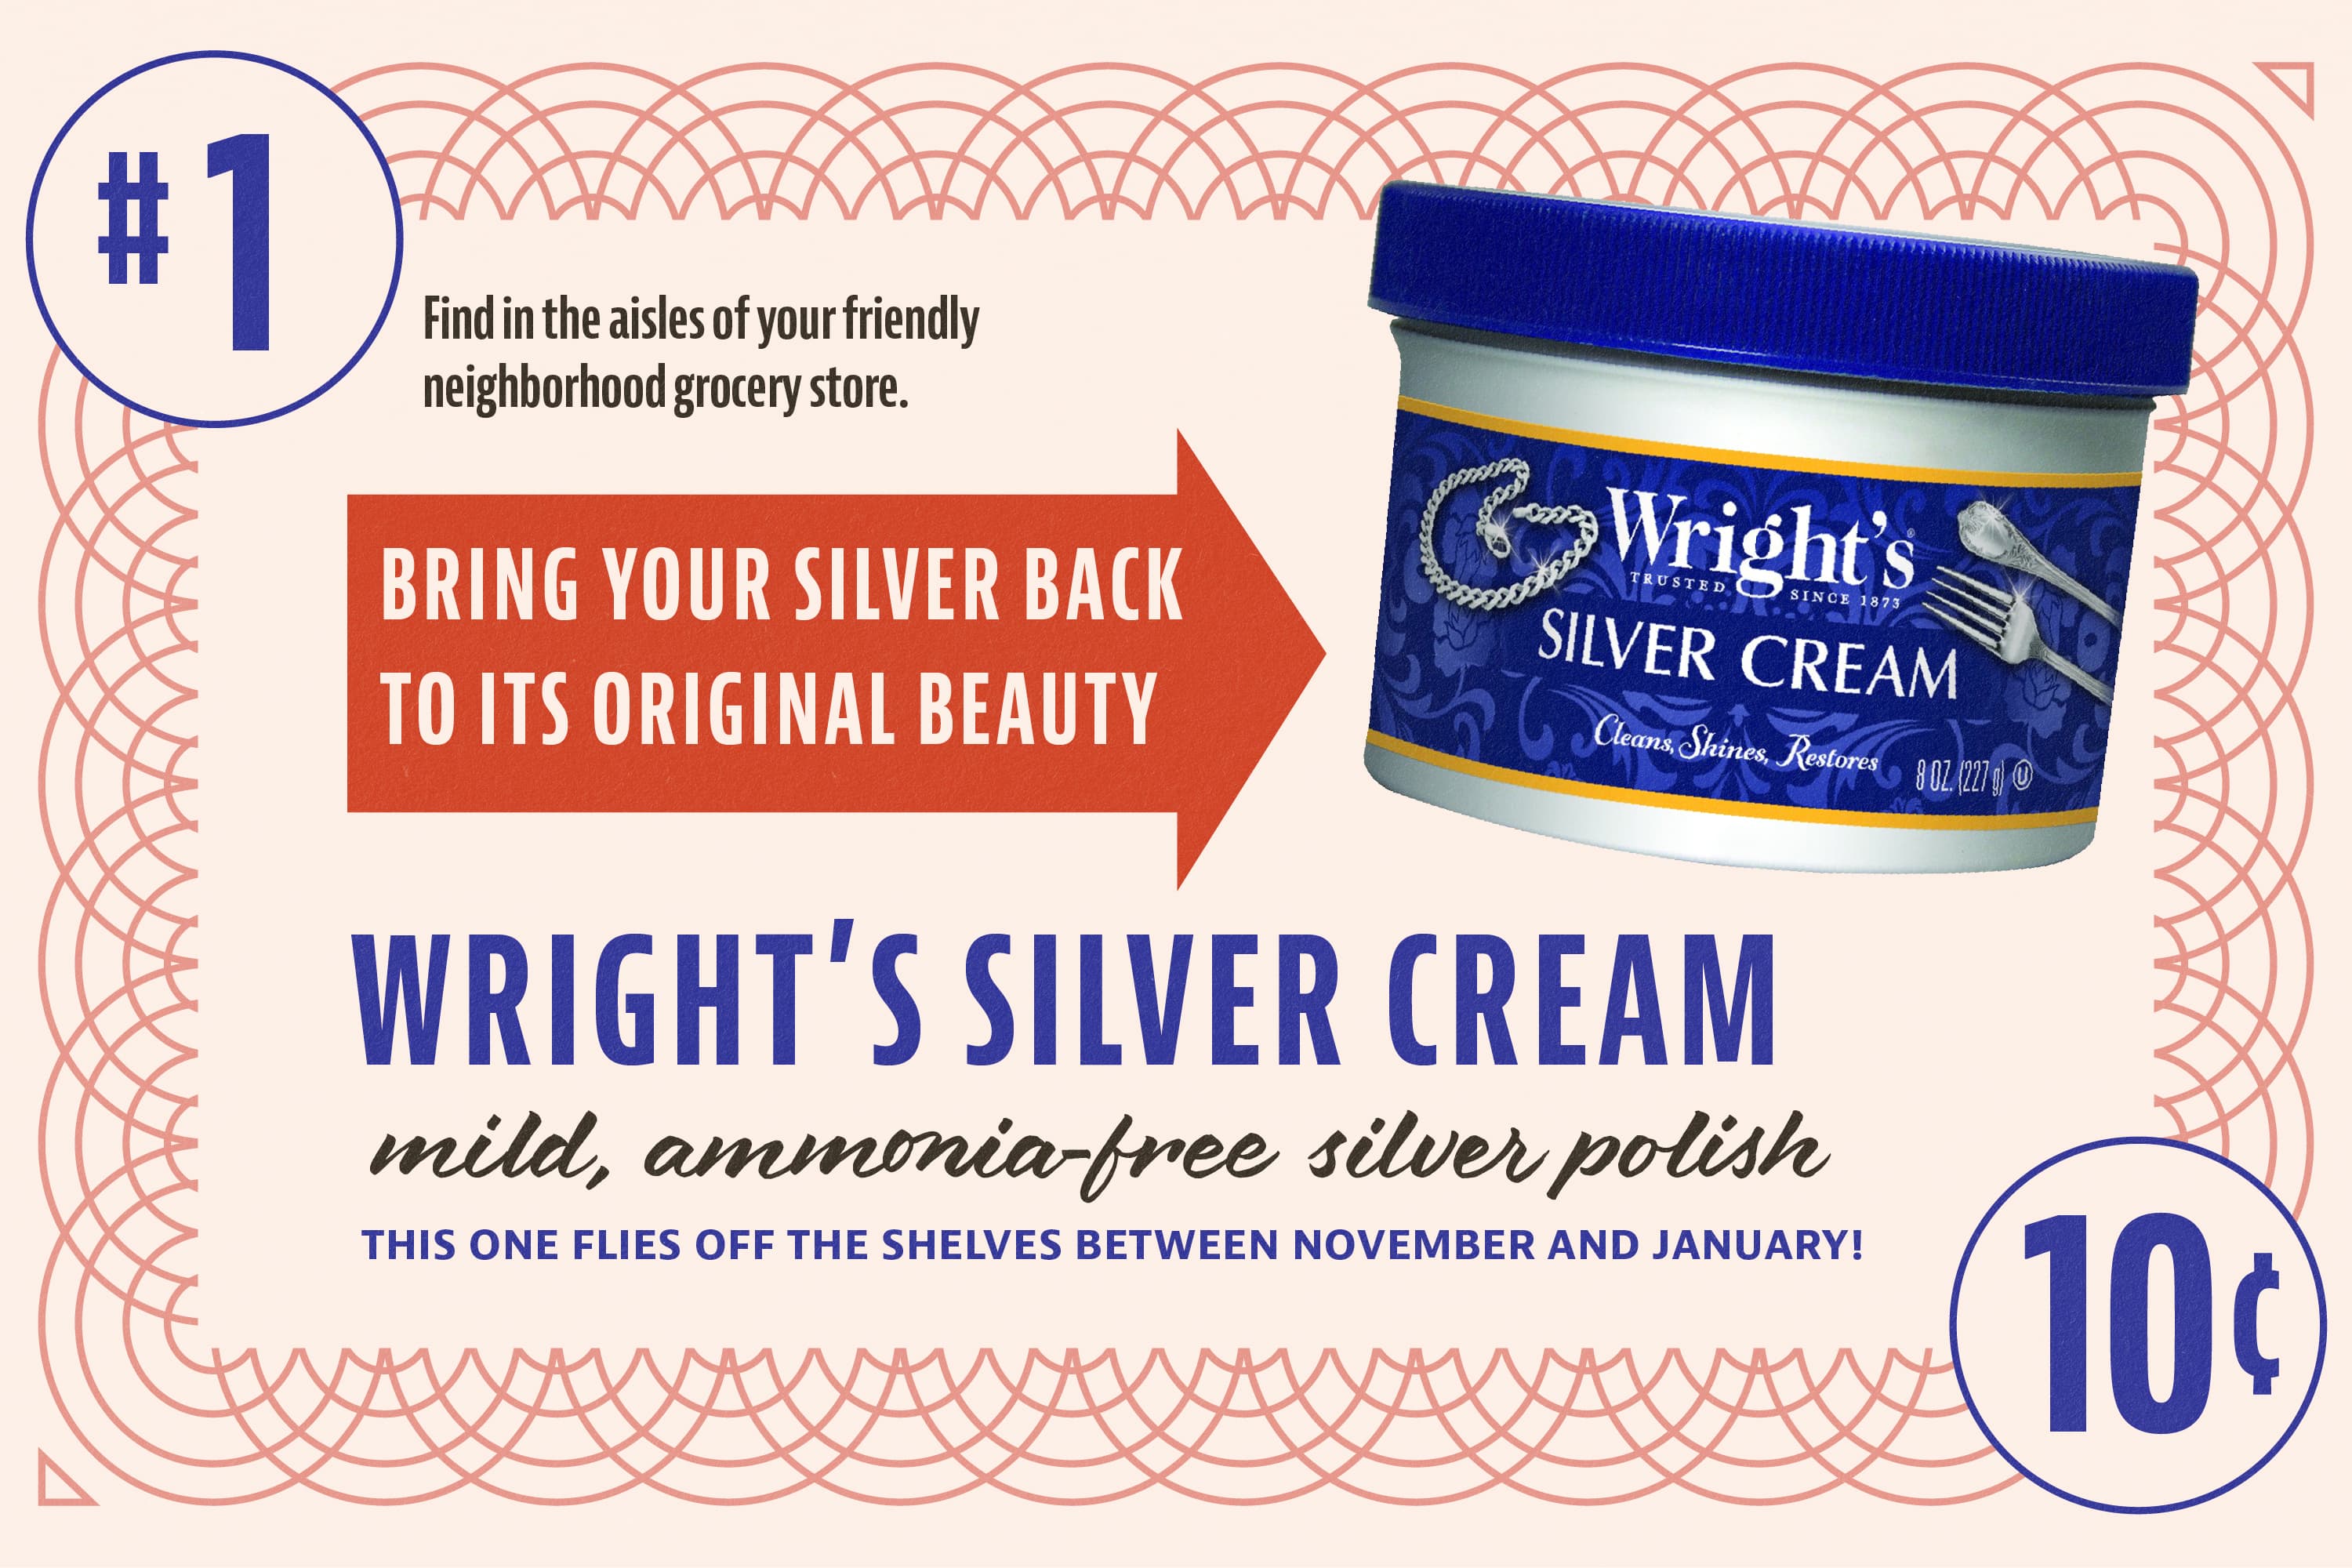 Unique Uses for Wright's Silver Cream